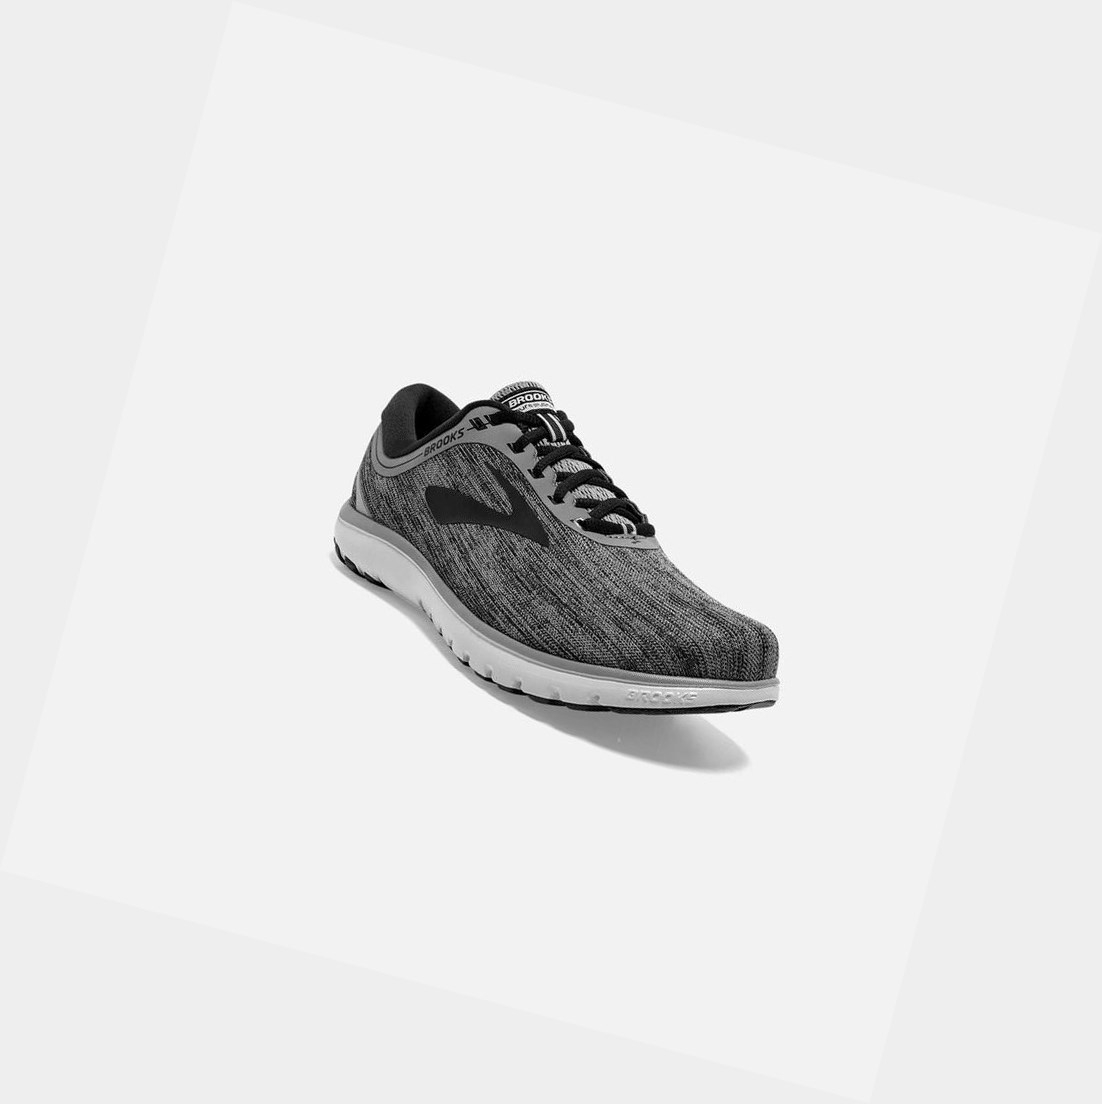 Brooks PureFlow 7 Men's Road Running Shoes Primer / Black / Oyster | VDPT-68173